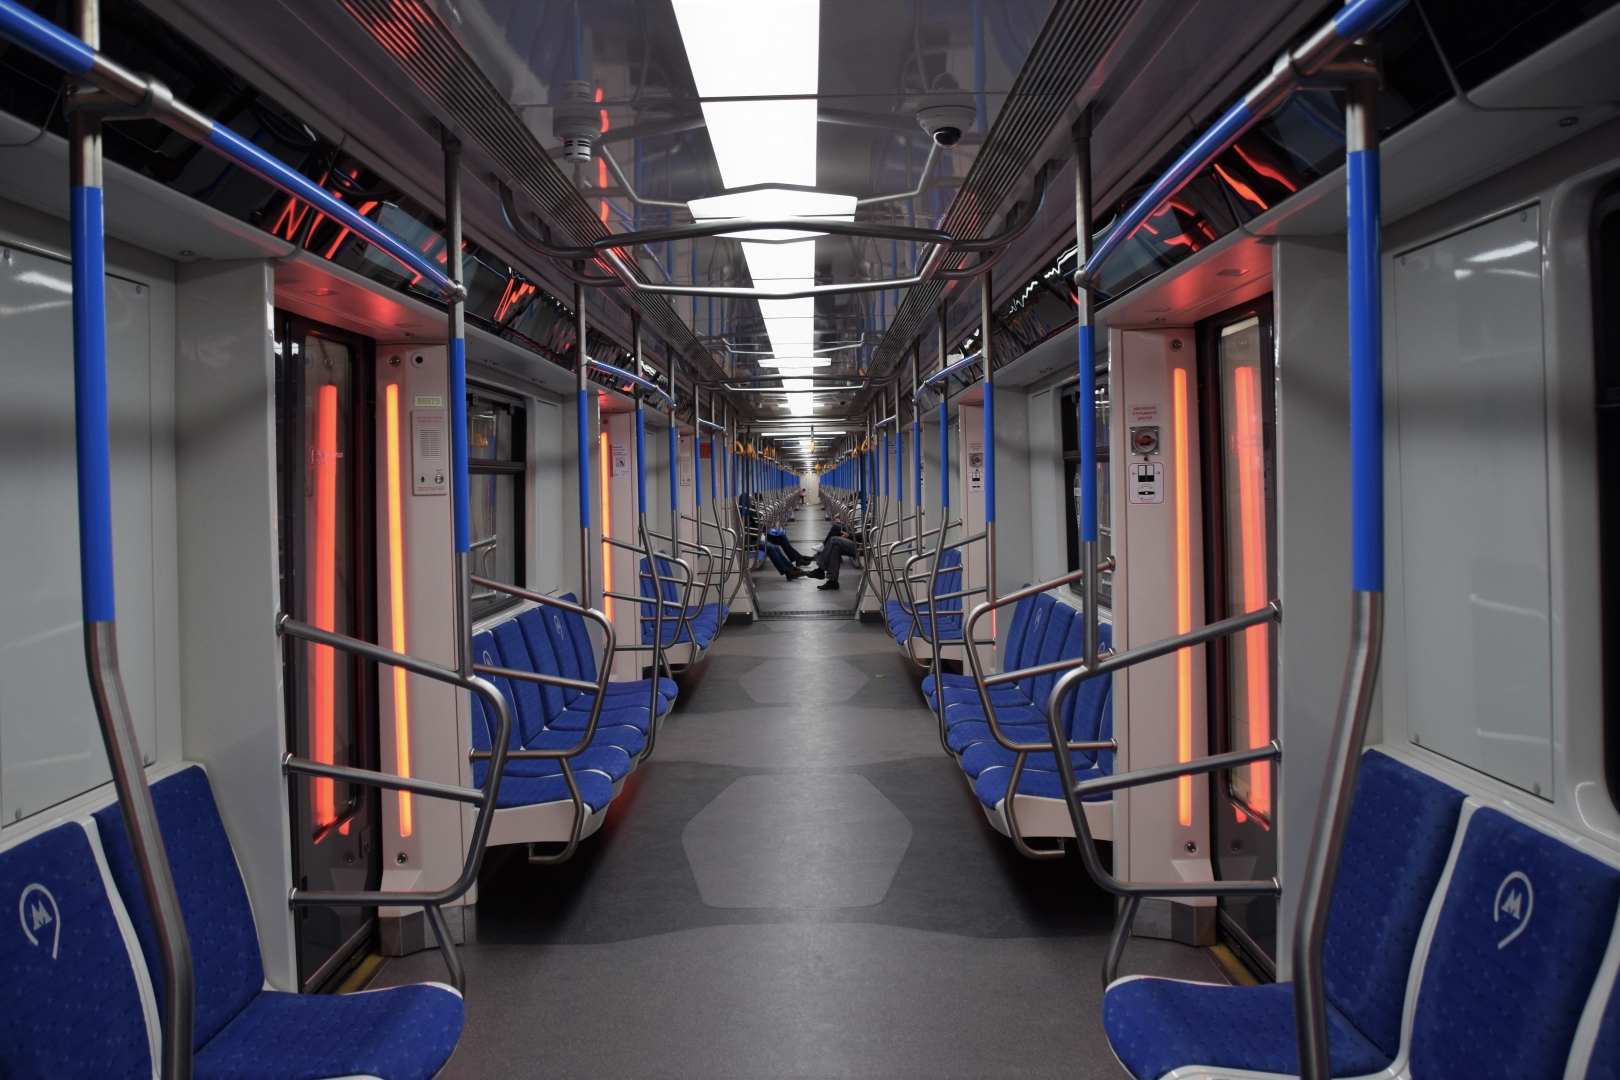 Новые вагоны метро в москве внутри